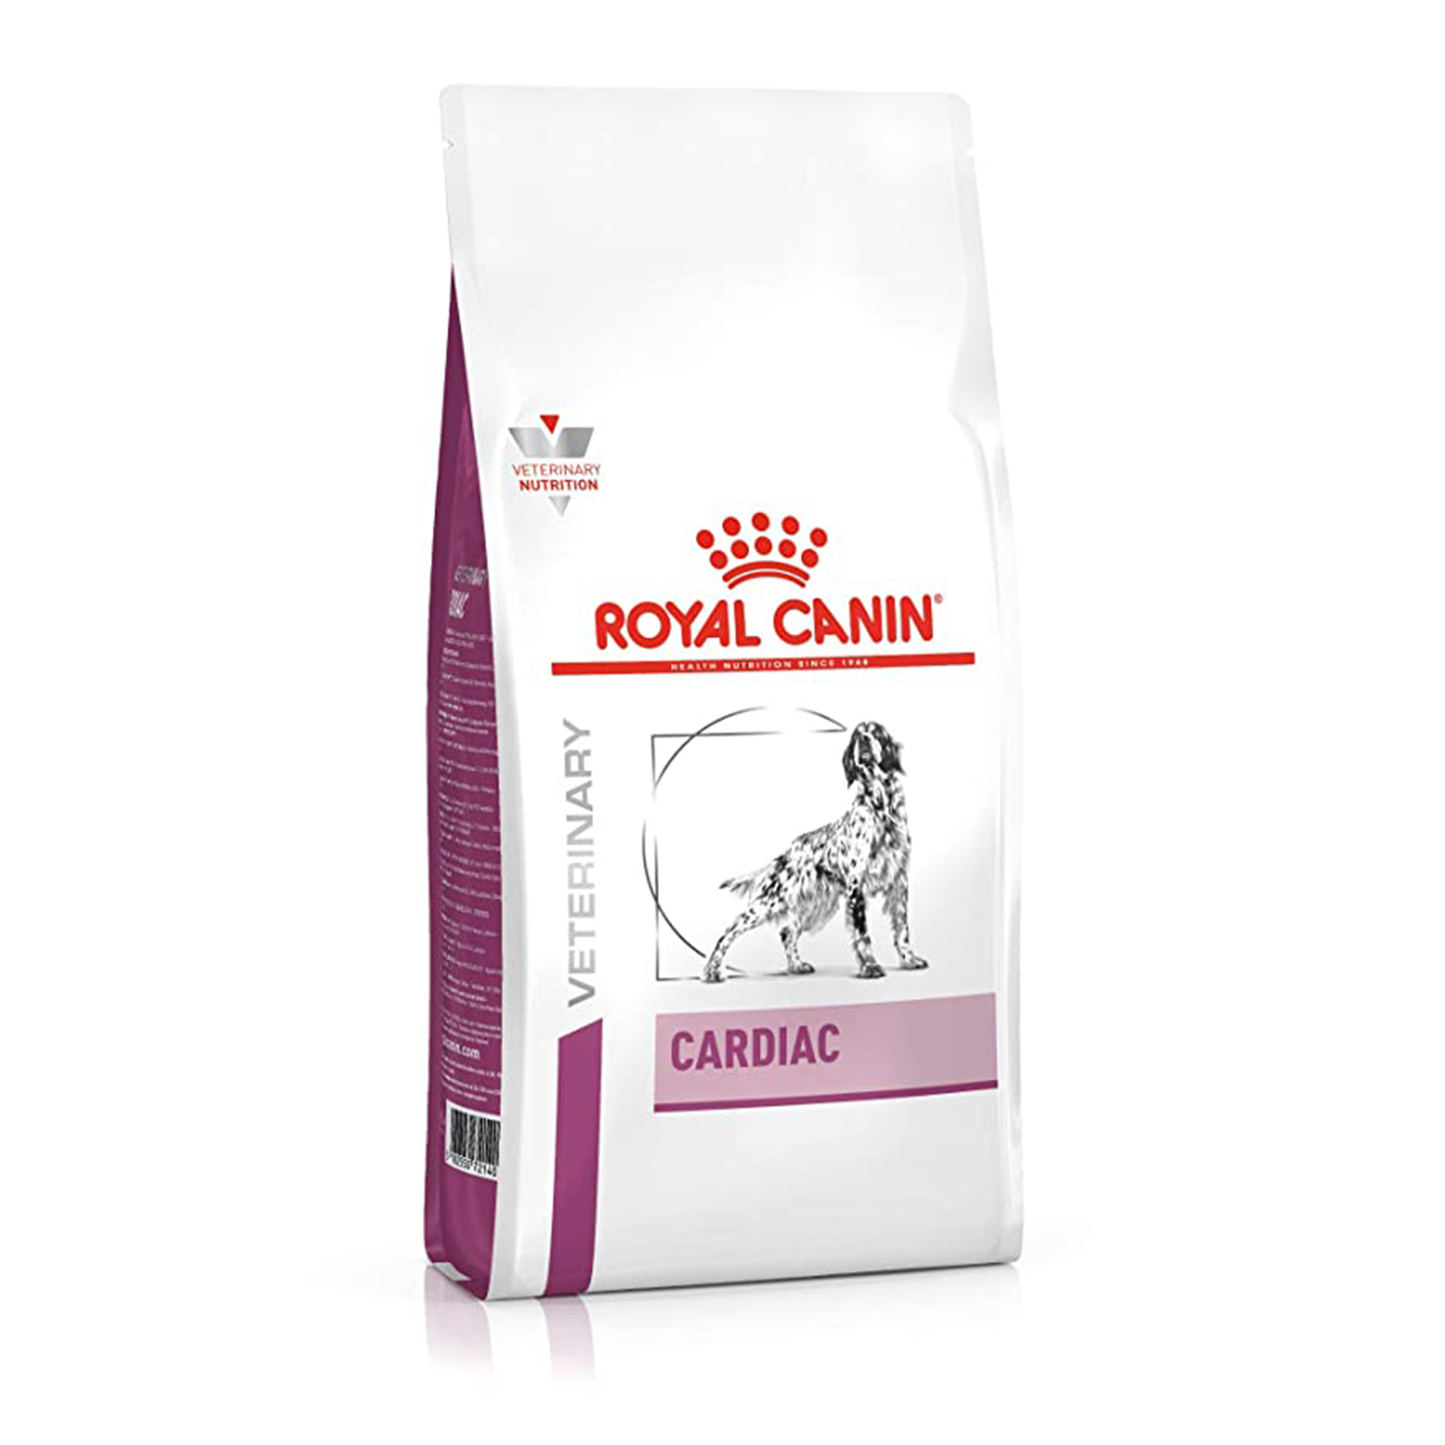 Royal Canin Cardiac Canine (17.6lbs bag)